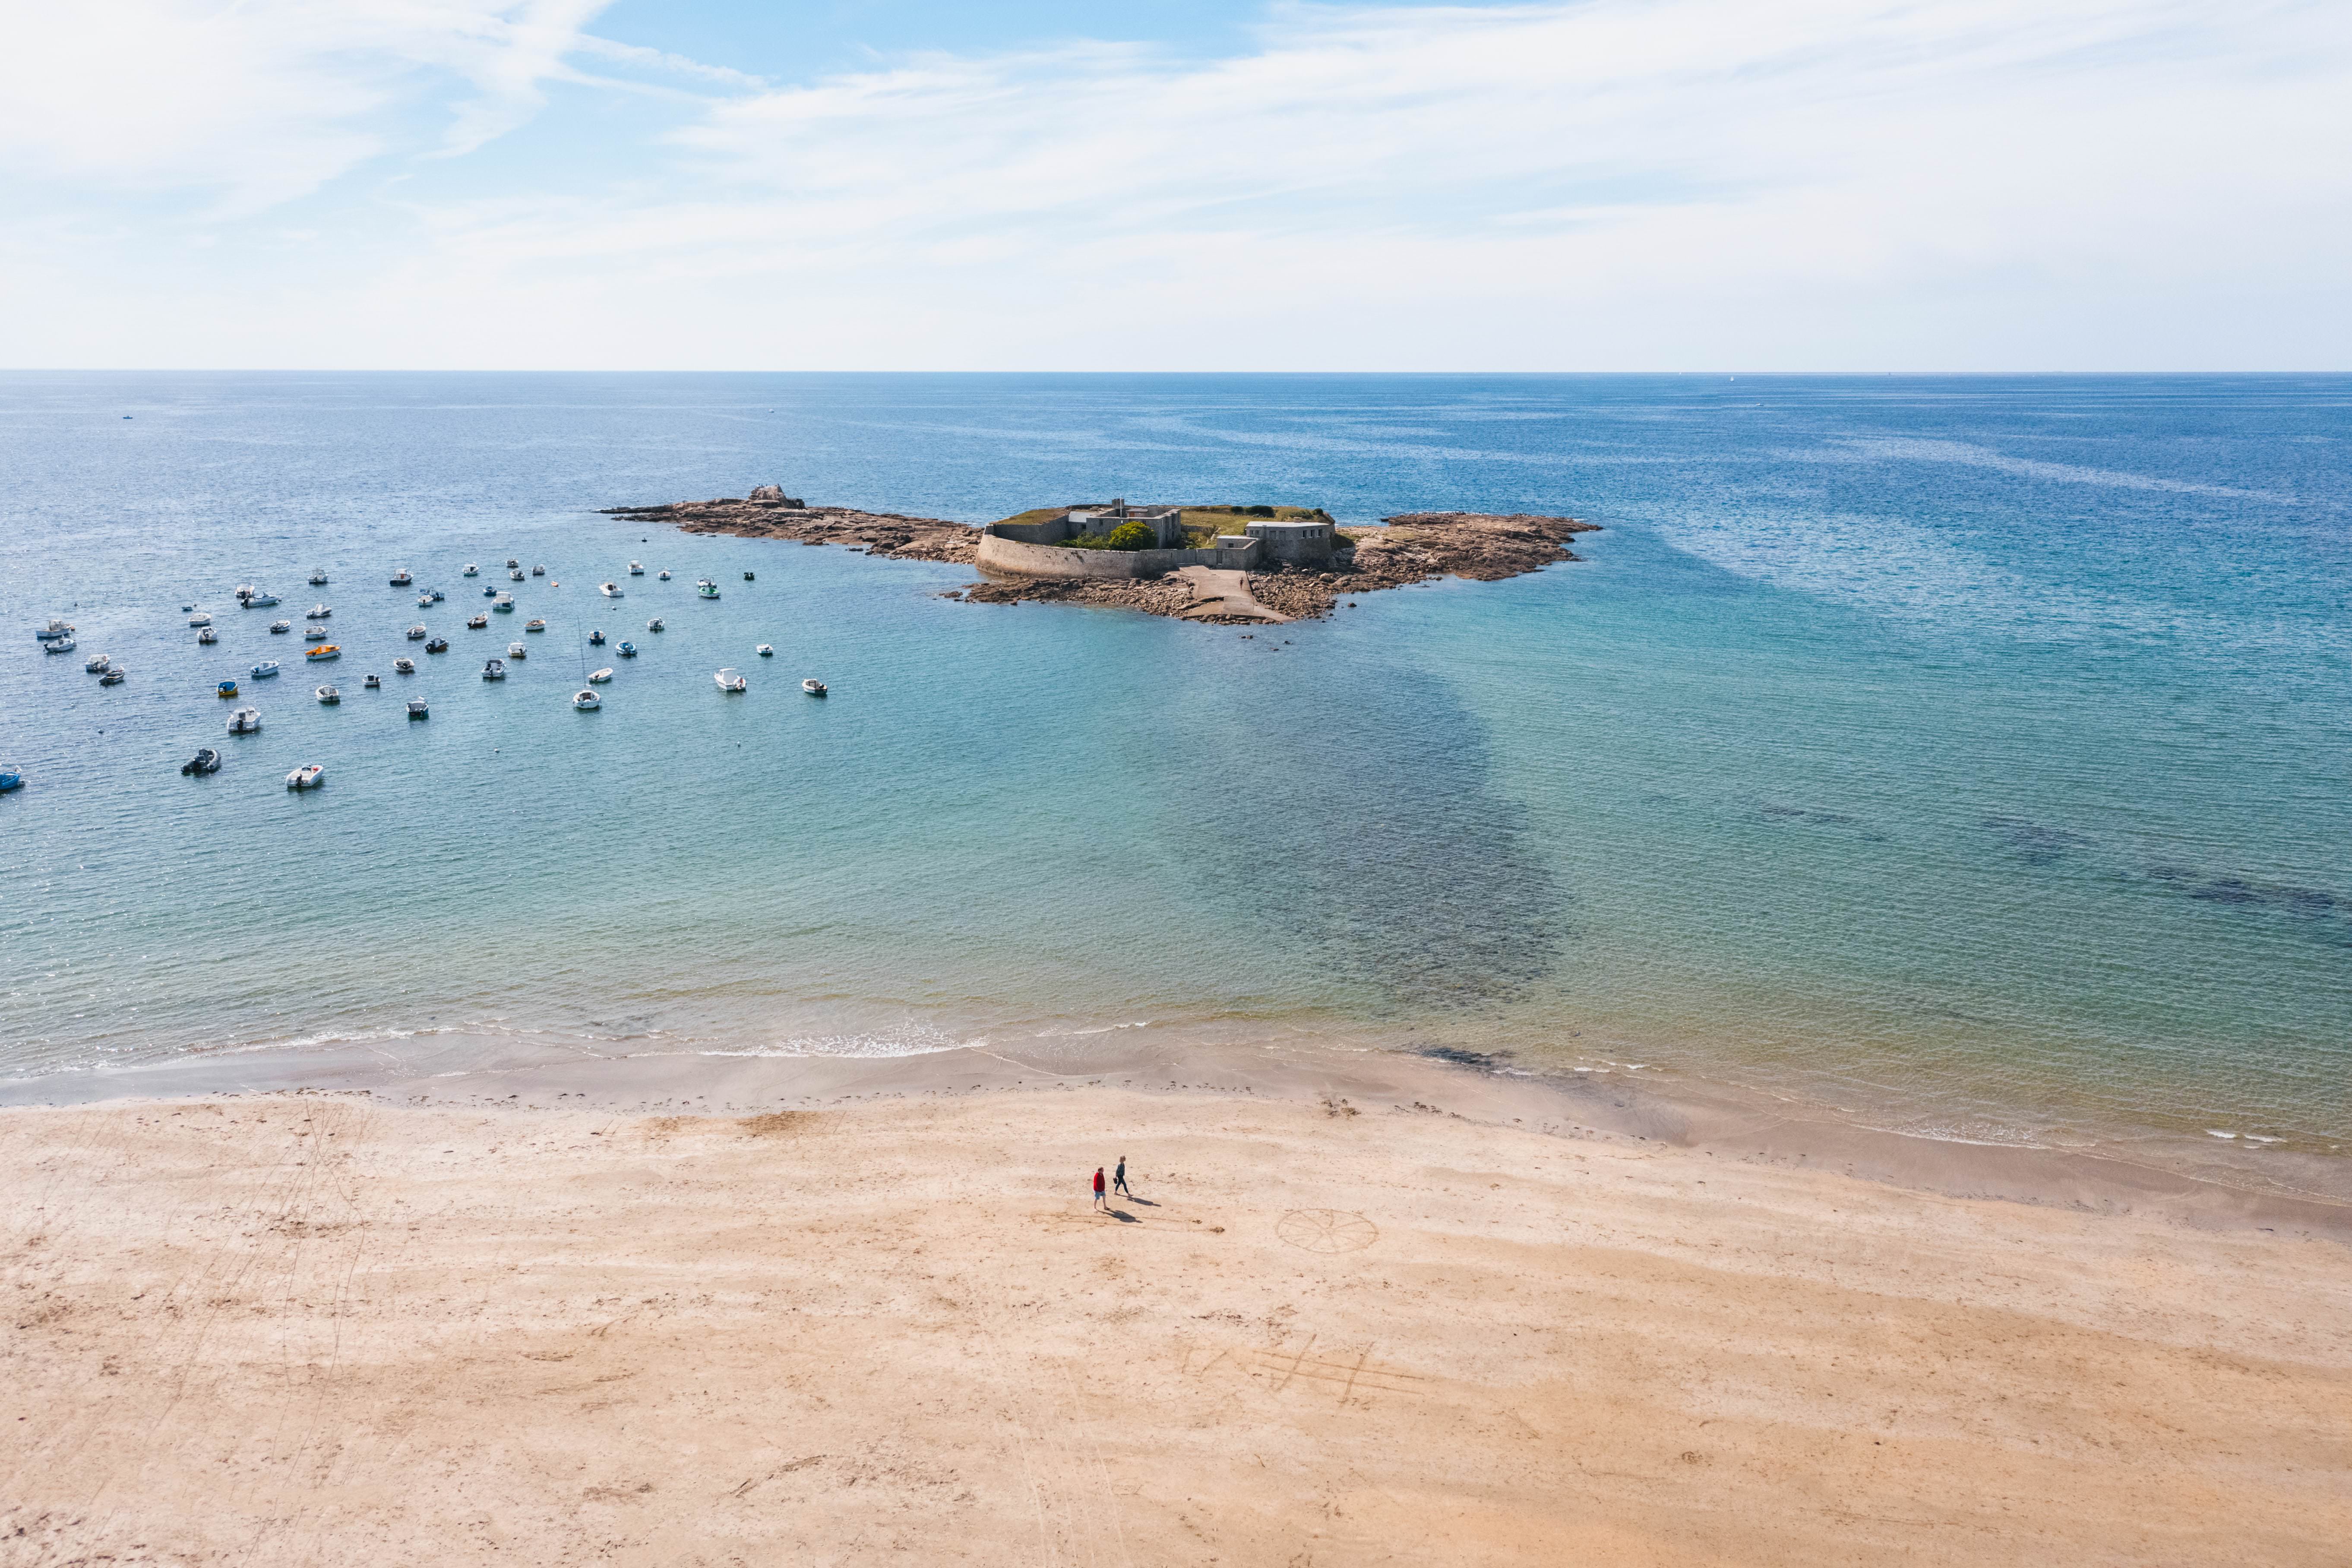 Aller sur une île en Bretagne Sud  Tourisme dans le Morbihan, informations  et réservations pour vos vacances en Bretagne